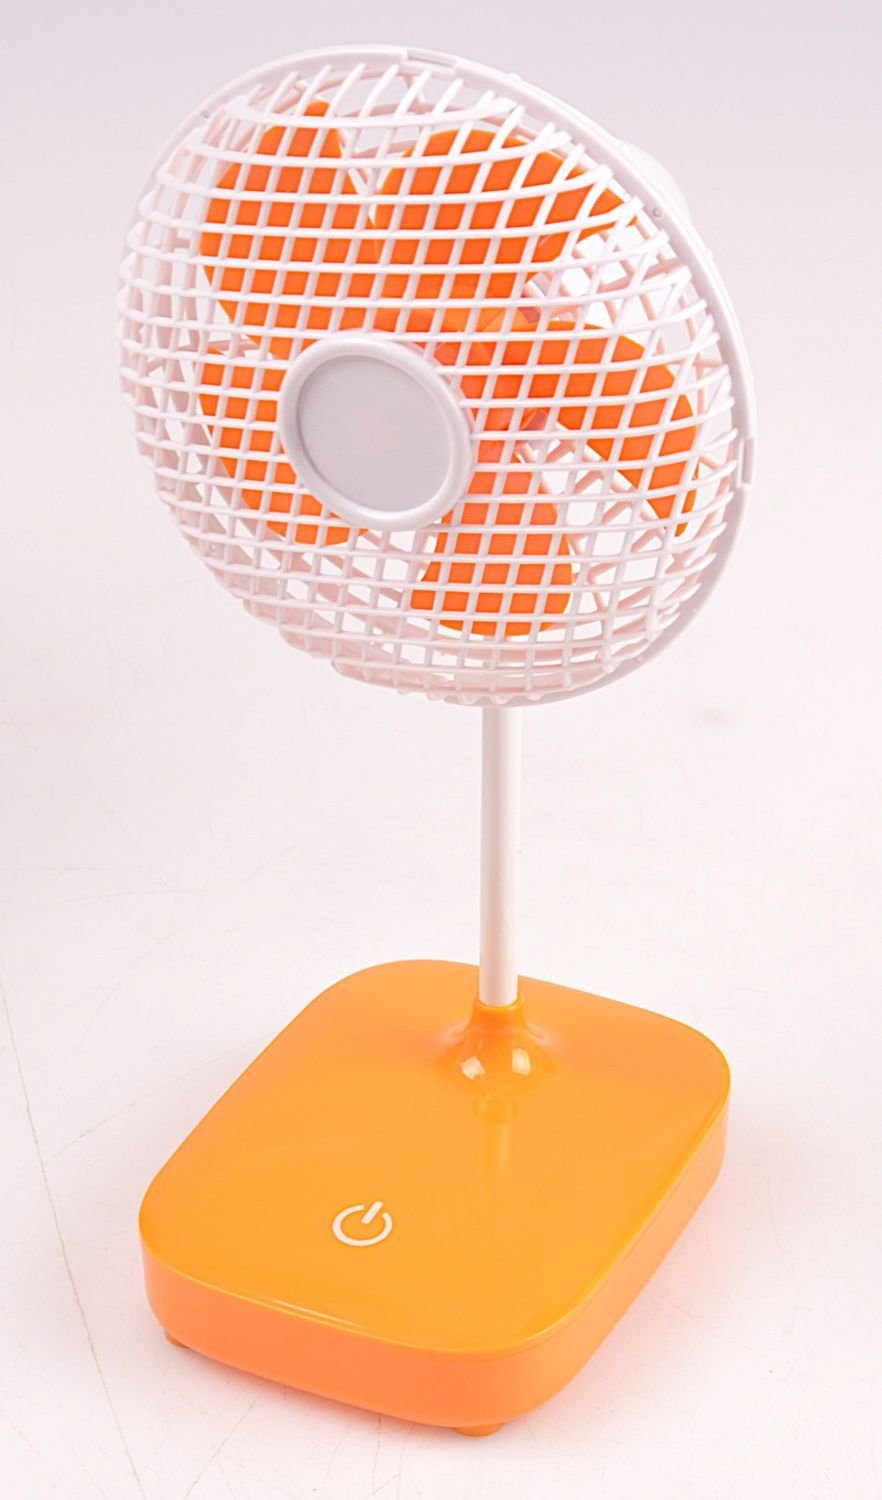 BURI Standventilator Mini-Ventilator Ø13cm Tischventilator Lüfter Kühler Gebläse orange